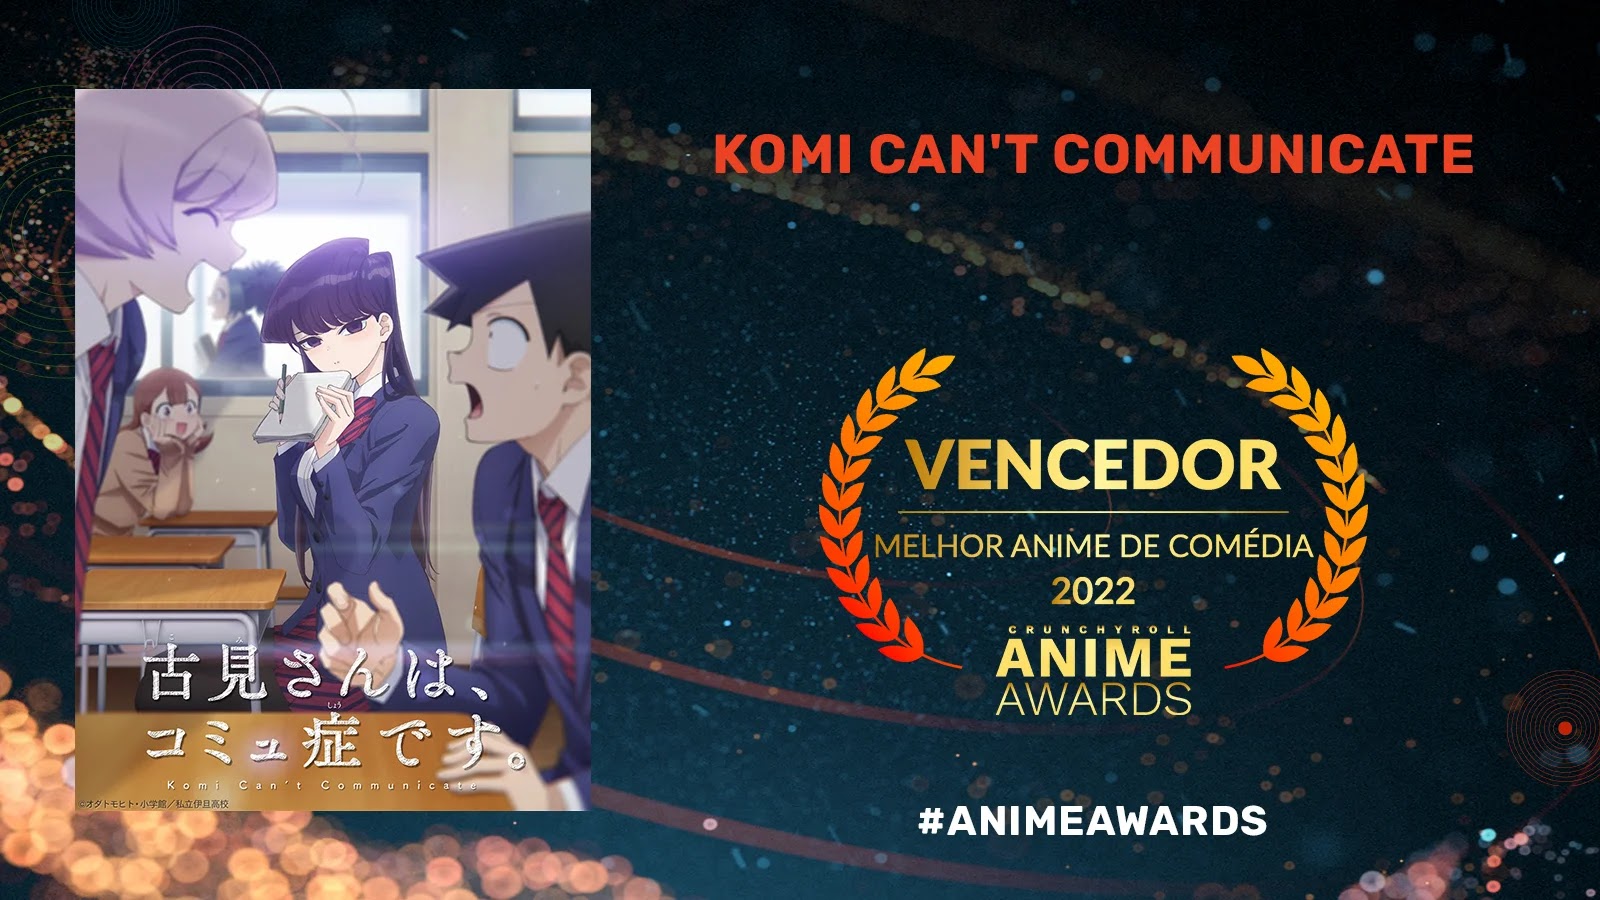 Crunchyroll Anime Awards 2022: Conheça Todos os Vencedores